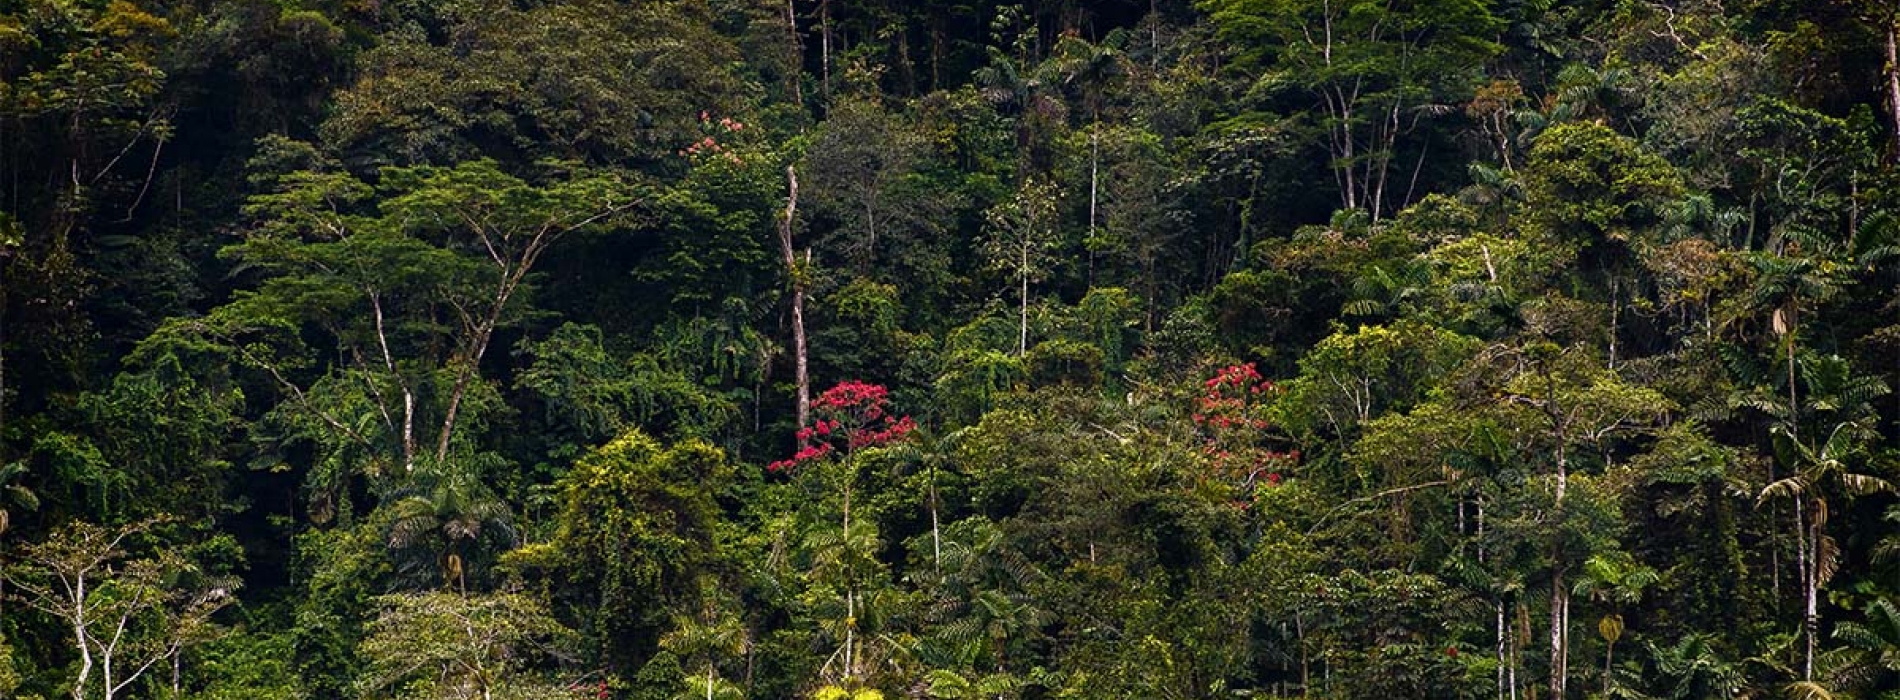  Aspectos ambientales, políticos y sociales de los incendios en la Amazonía